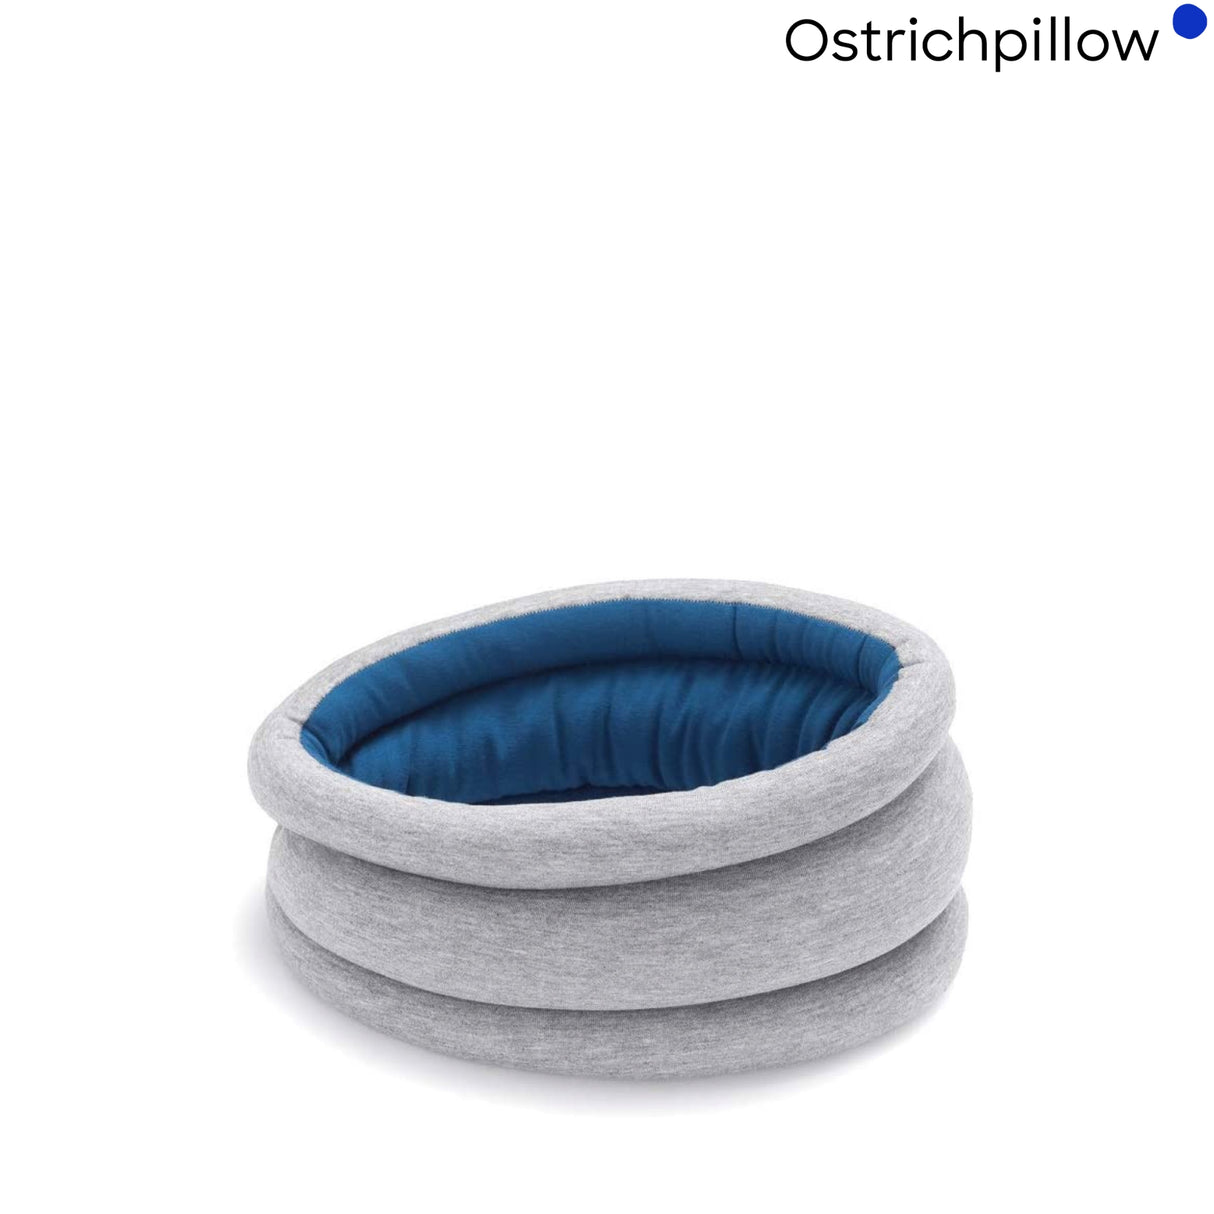 OSTRICHPILLOW Light Versatile Pillow